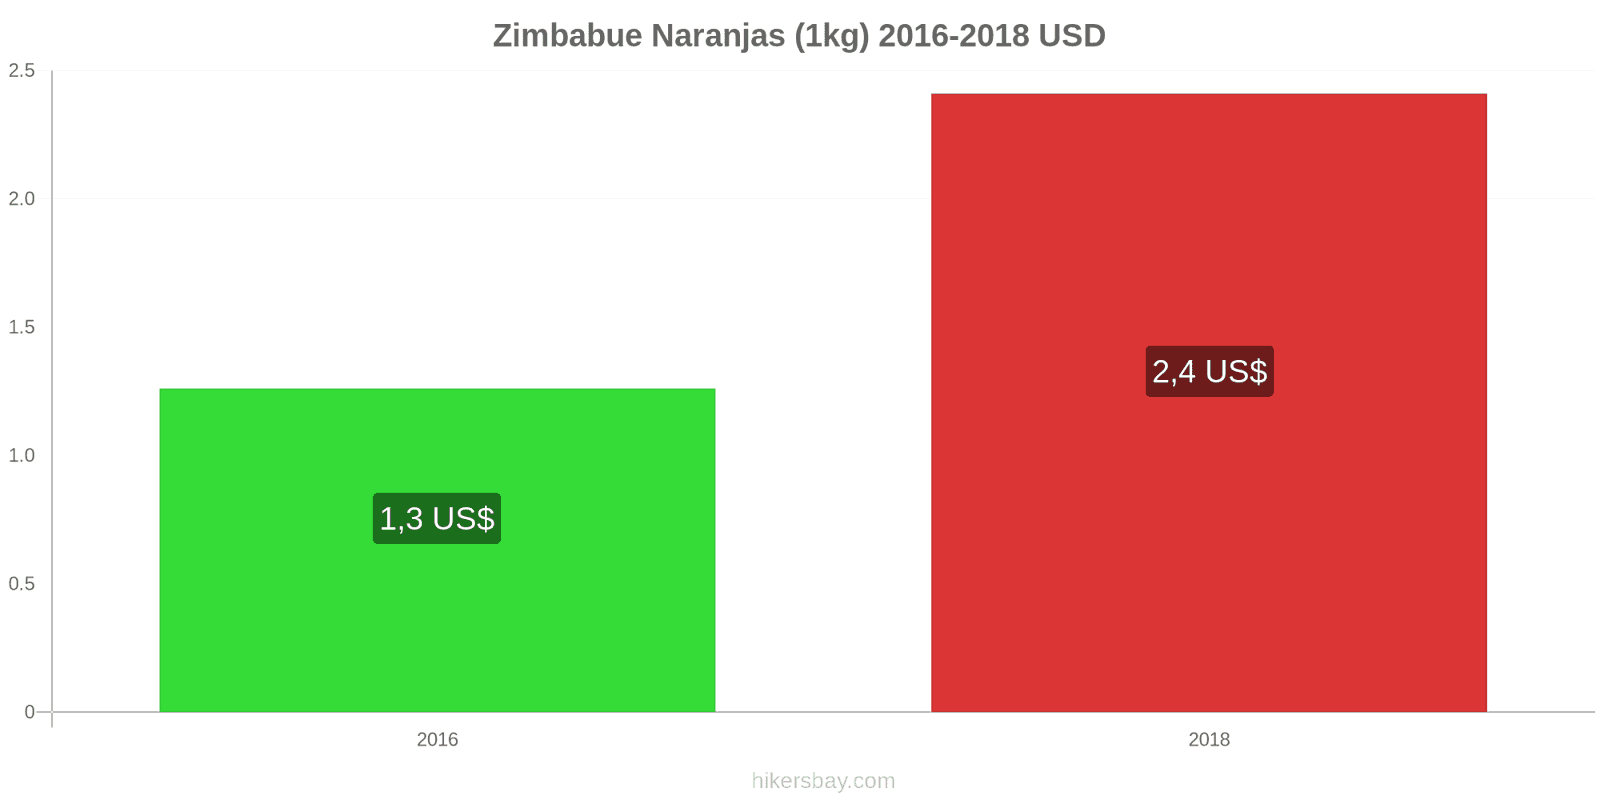 Zimbabue cambios de precios Naranjas (1kg) hikersbay.com